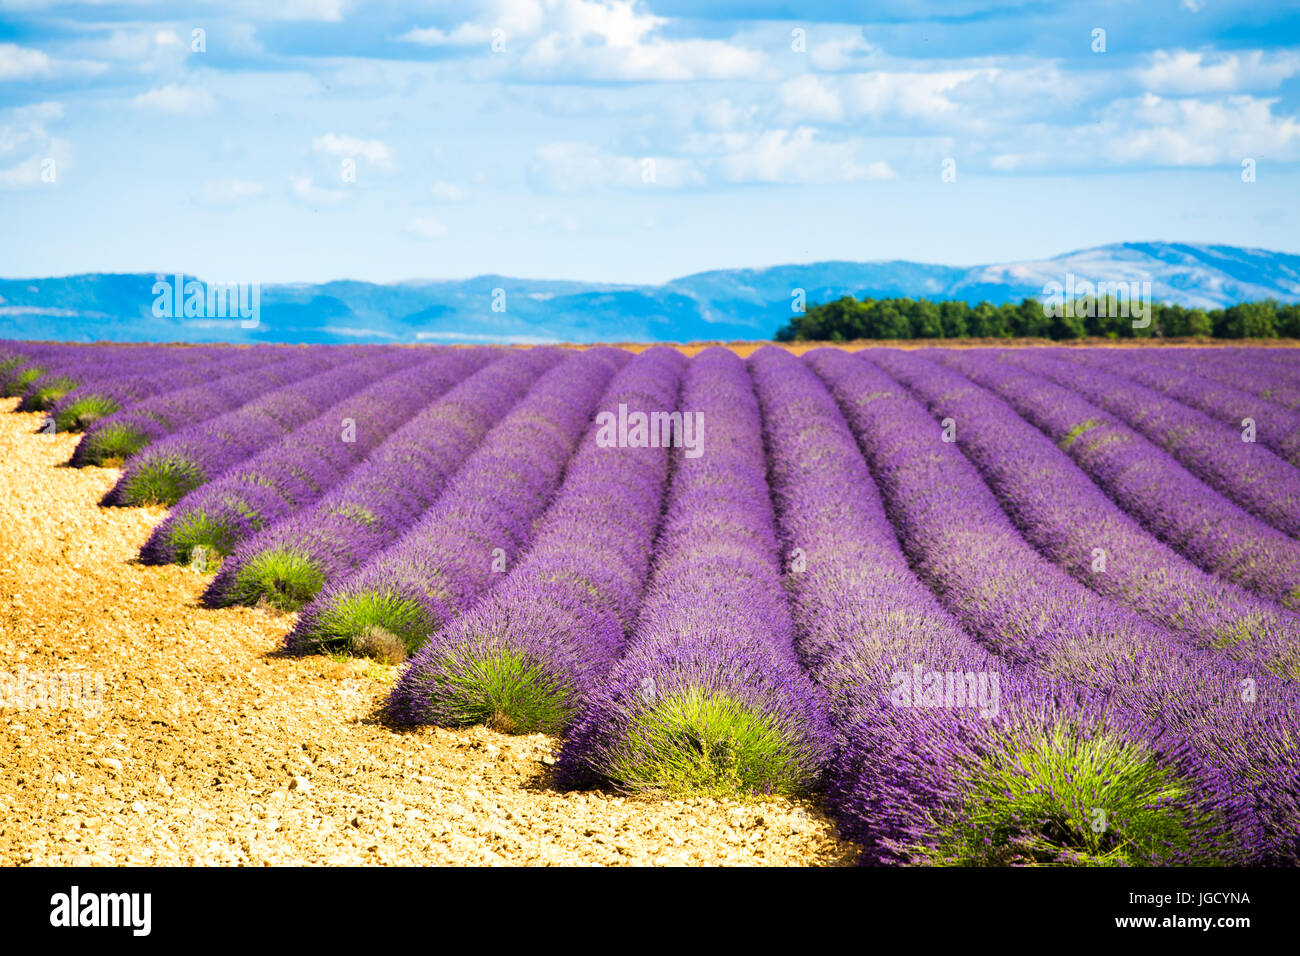 Plateau von Valensole, Provence, Frankreich. Lavendelfelder in voller Blüte Stockfoto